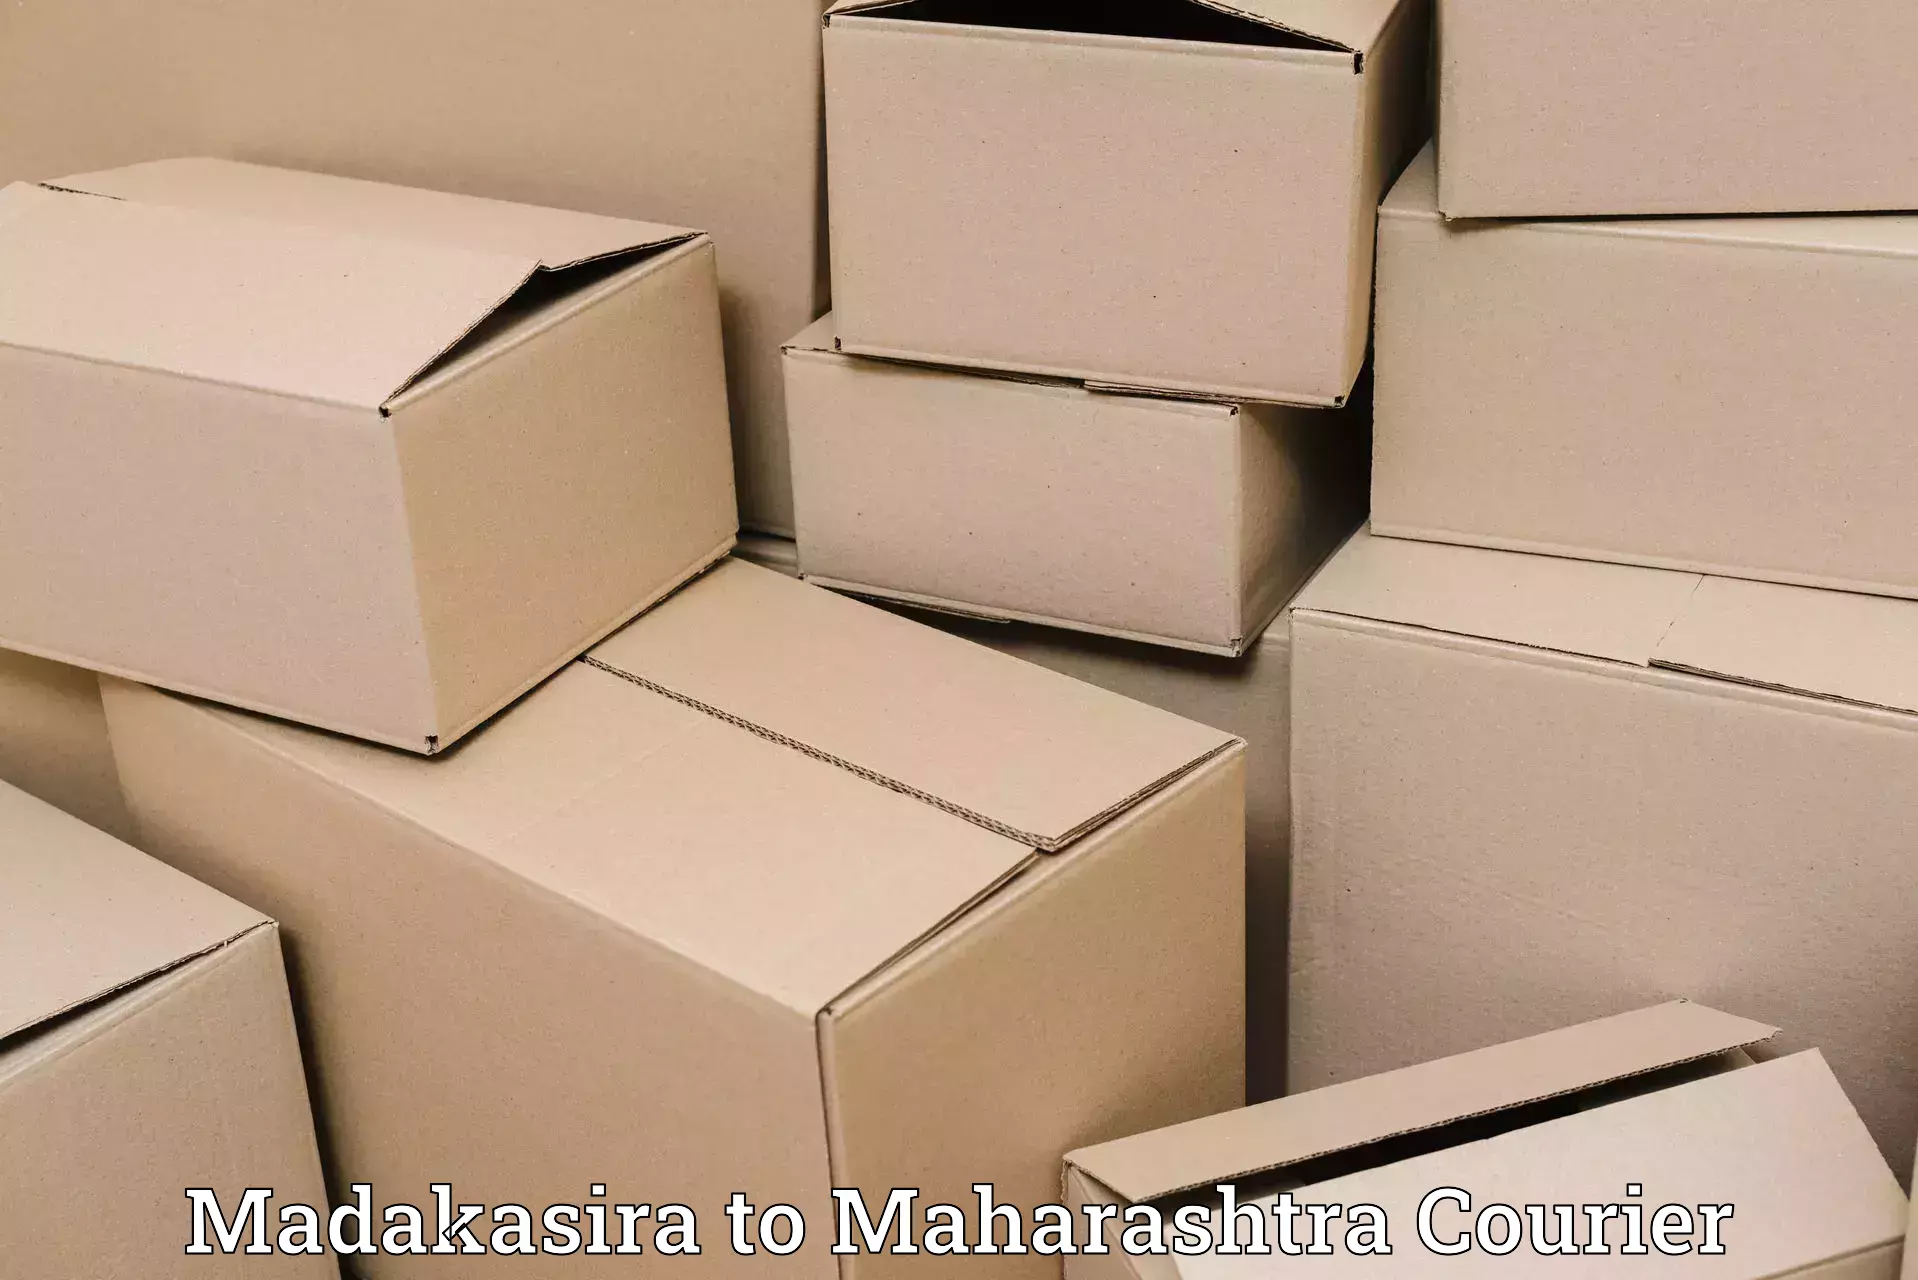 Smart courier technologies Madakasira to Sangameshwar